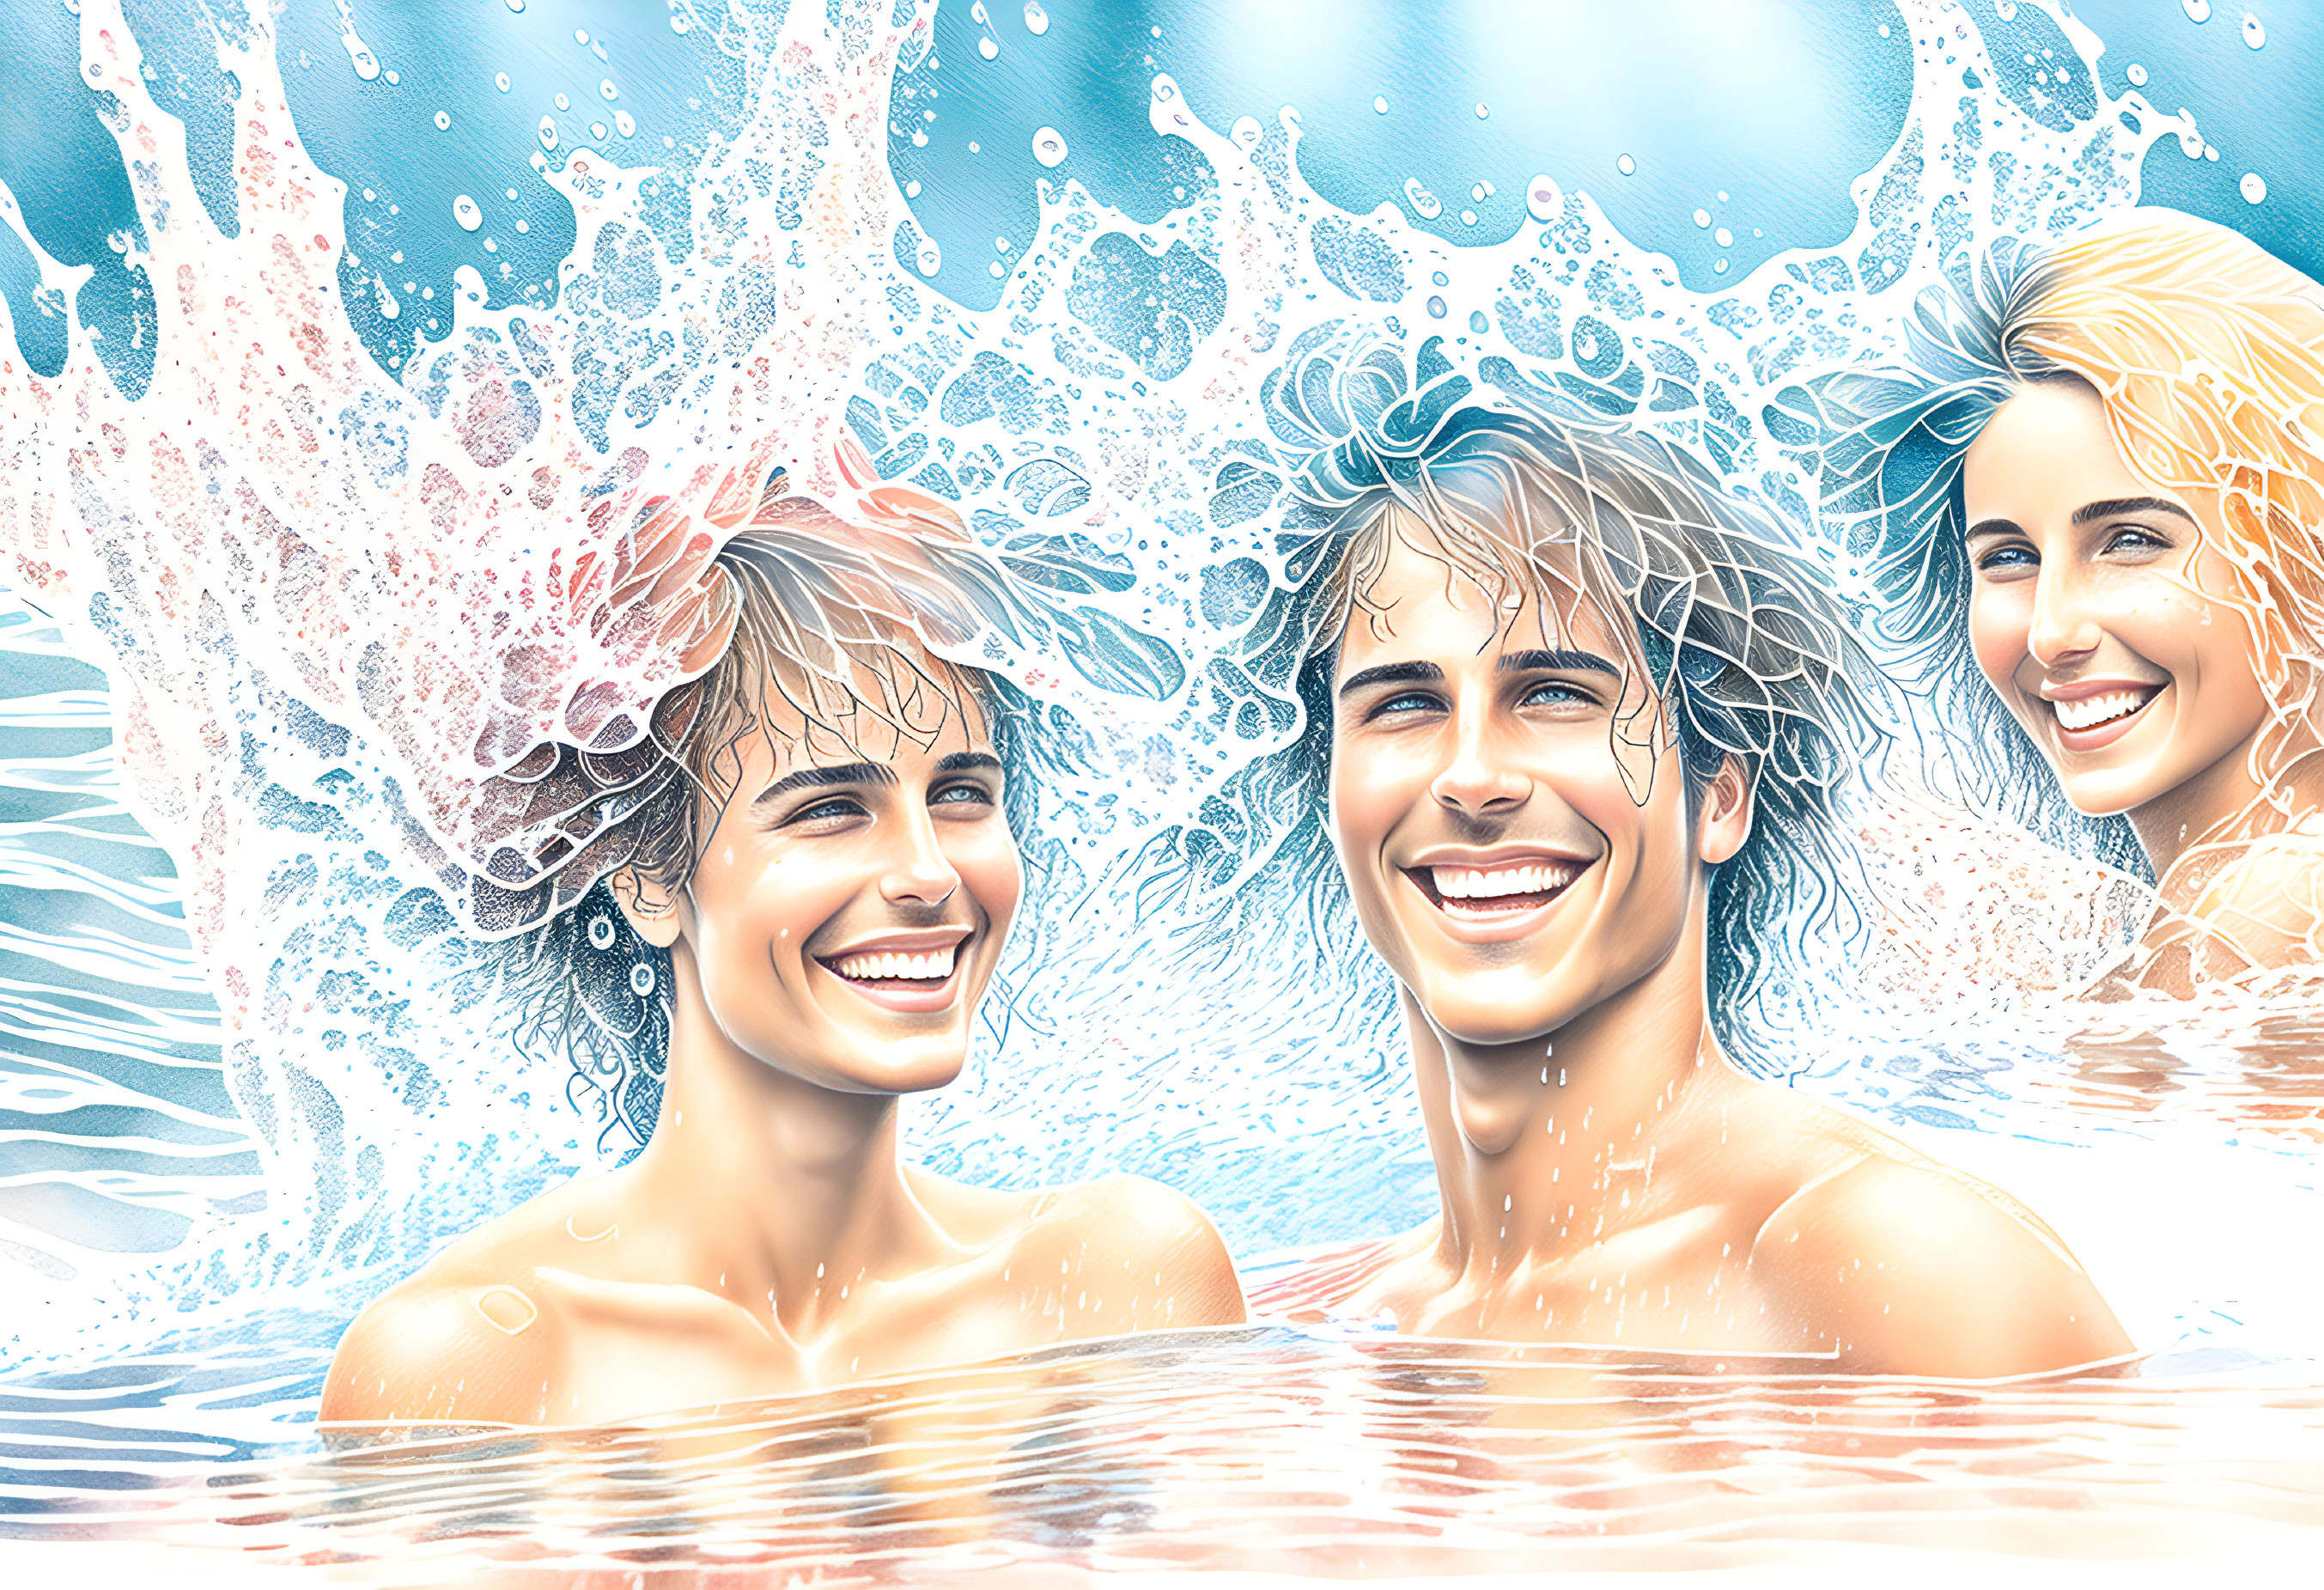 Joyful Water Splash Portrait